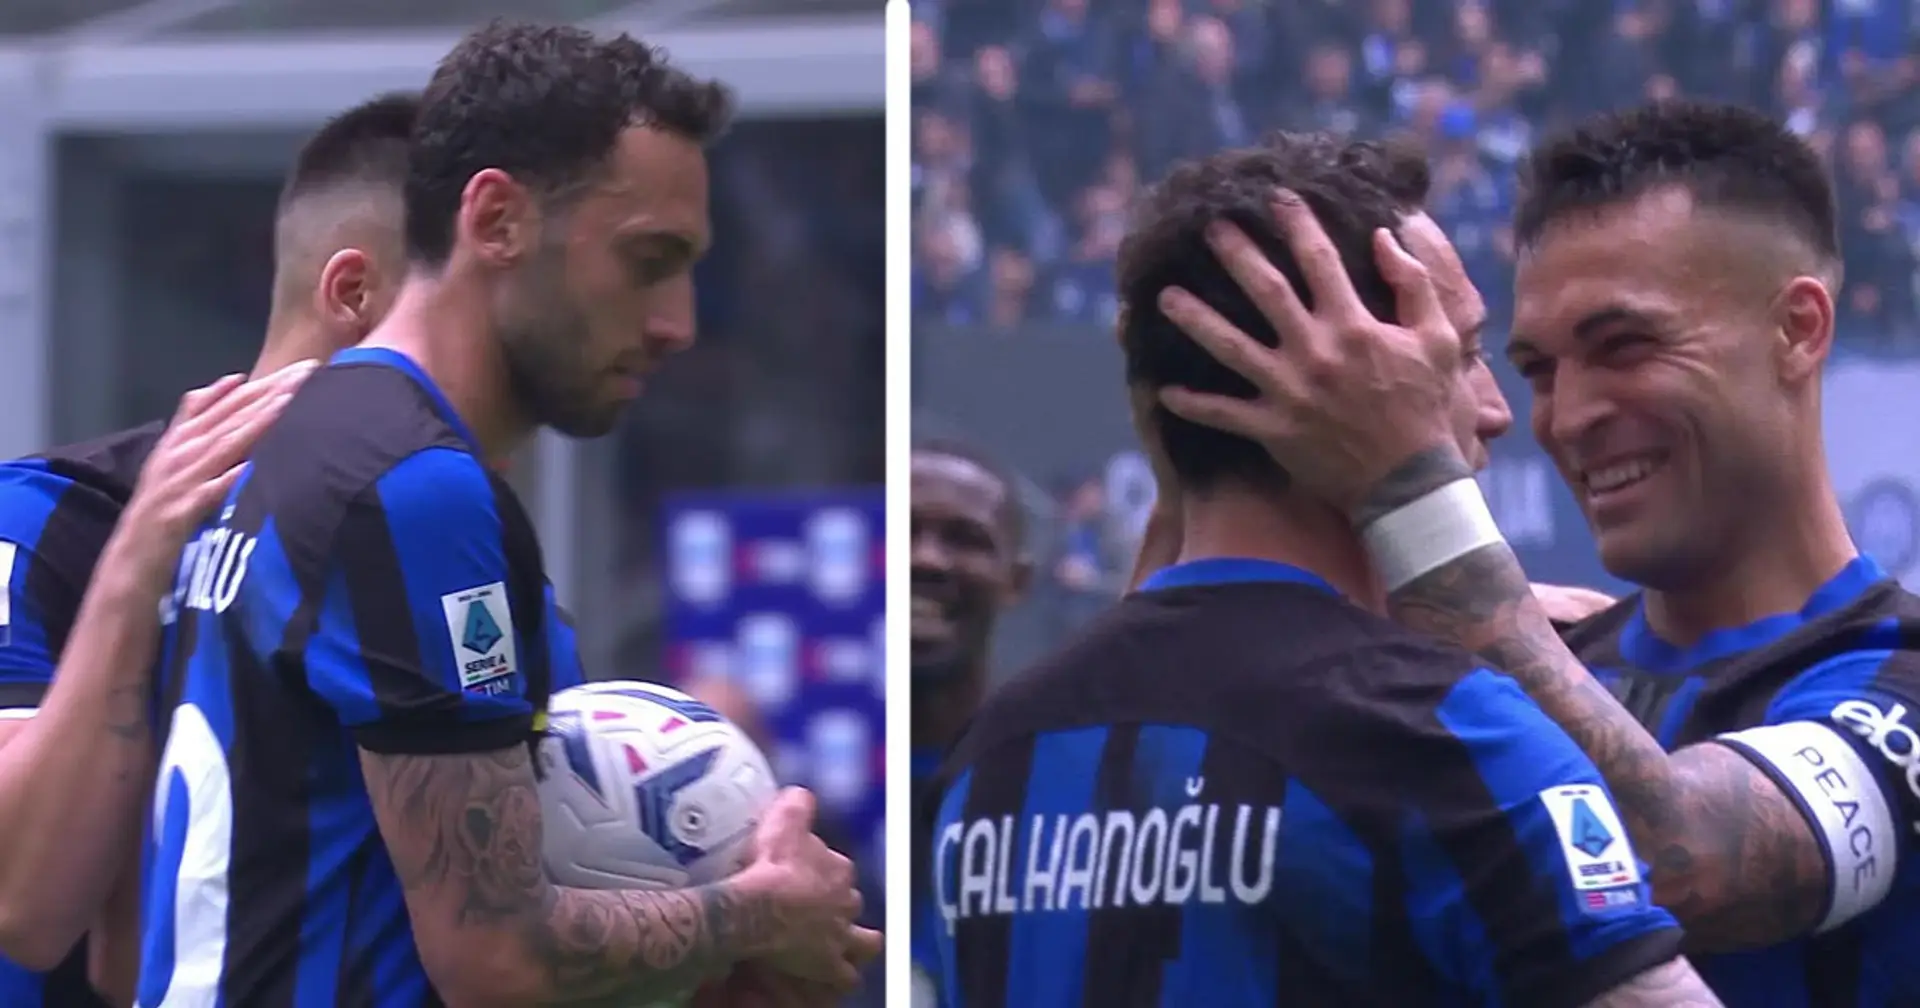 Rigore Inter, retroscena di Calhanoglu e Lautaro, il dialogo tra i due è la prova di forza di questa squadra: "Tiralo tu" 